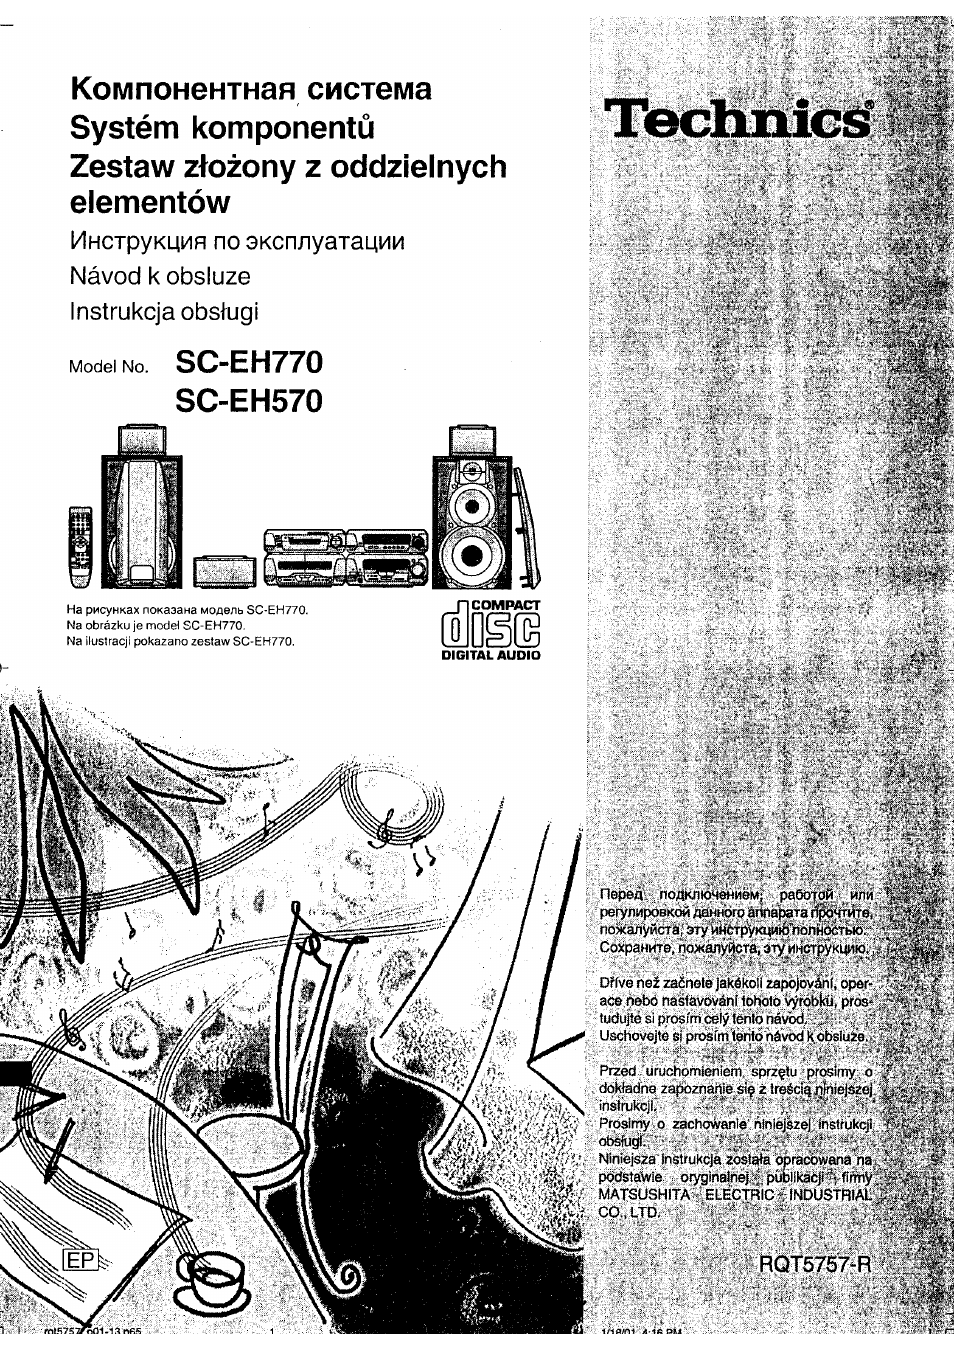 Инструкция по эксплуатации Panasonic SC-EH570 | 31 cтраница